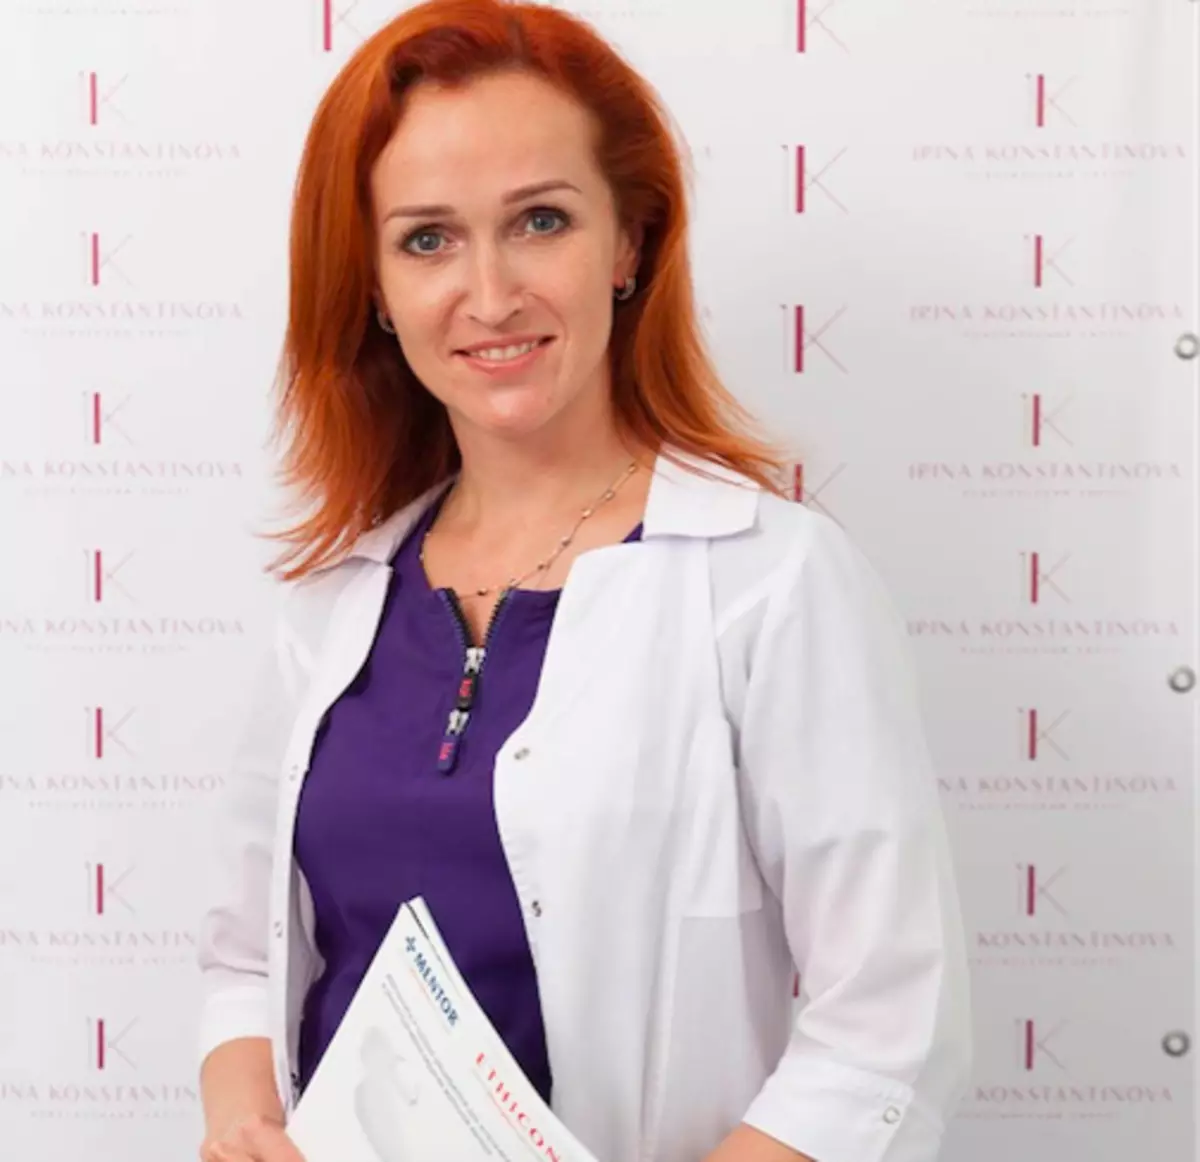 성형 외과 의사 Irina Konstantinova.